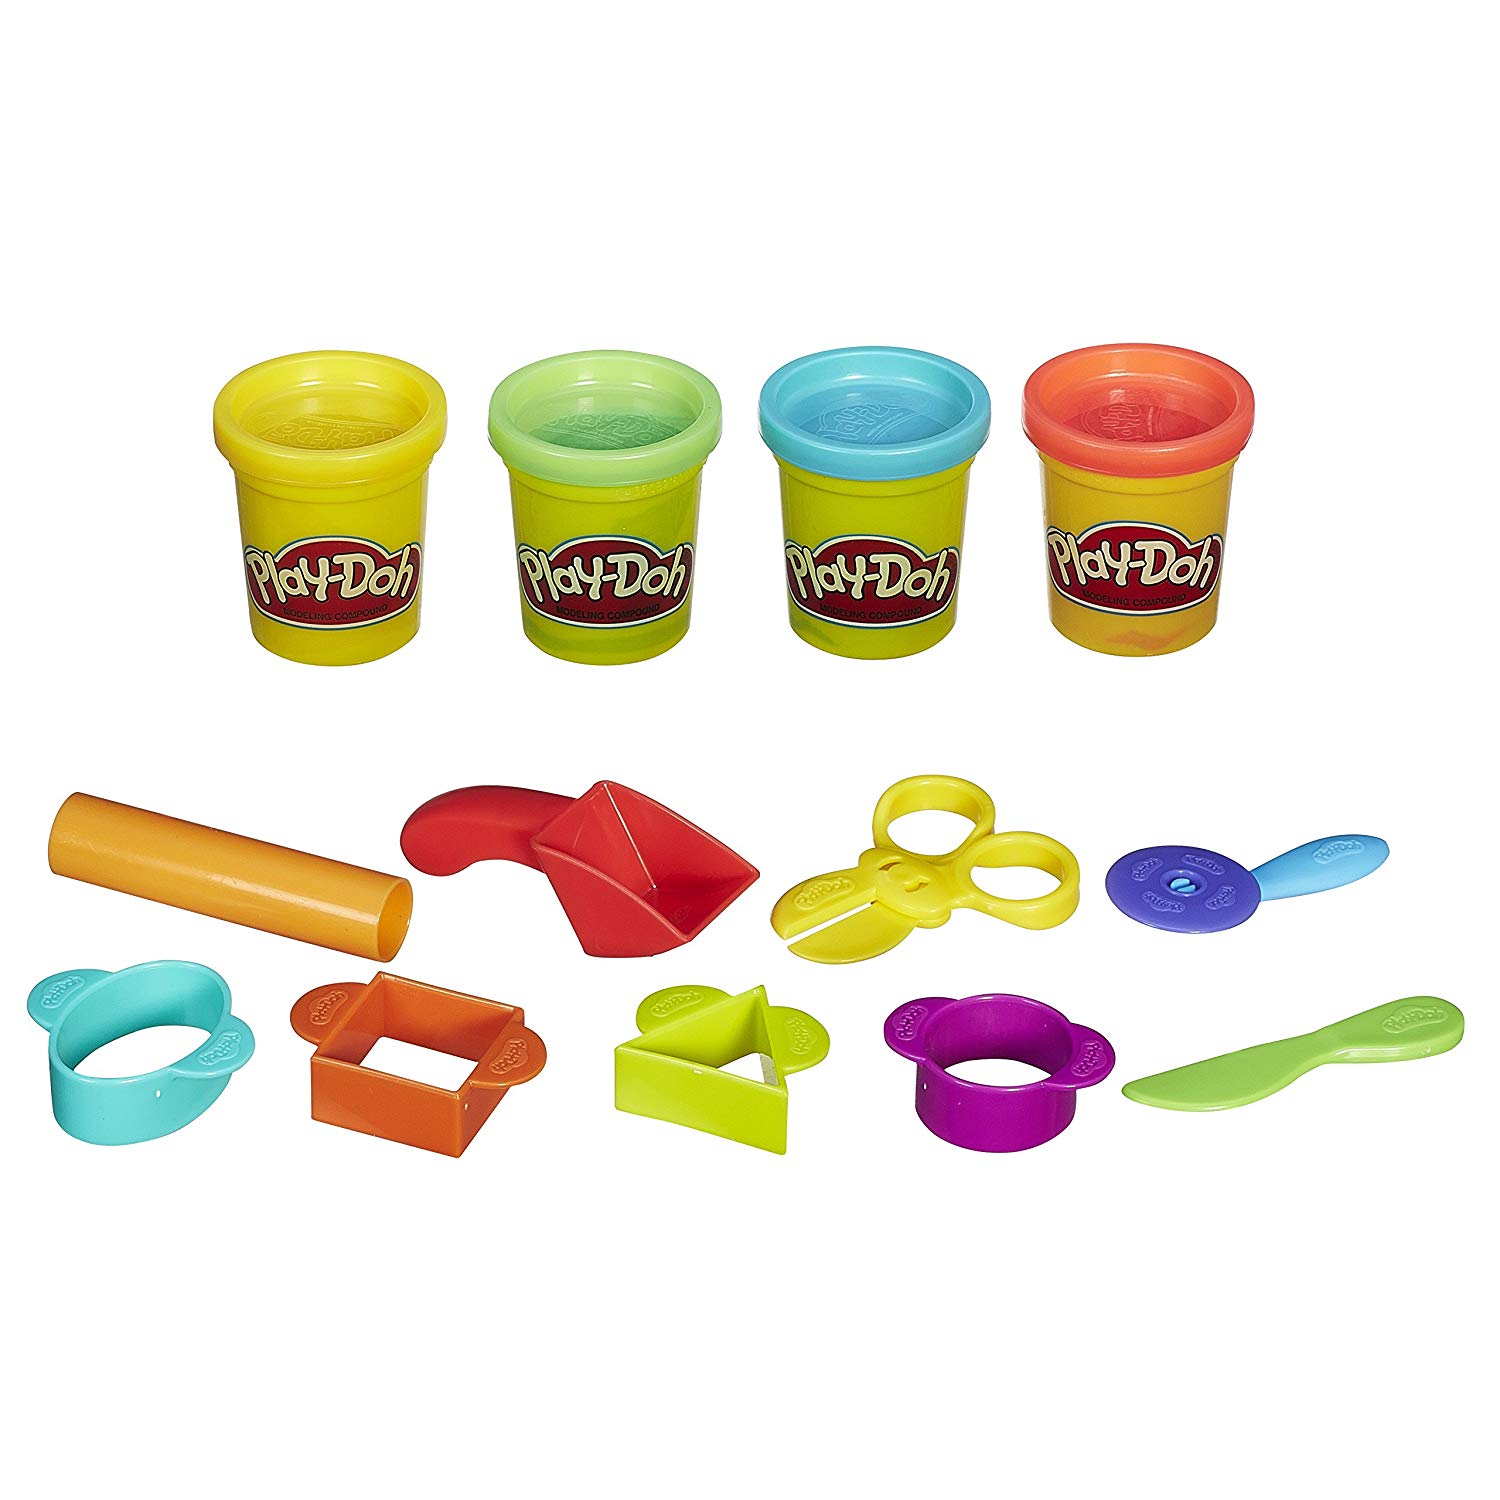 Купить наборы пластилина. Playdo пластилин набор. Пластилин Хасбро. Play-Doh Hasbro набор базовый. Пластилин "Play-Doh зубной врач".